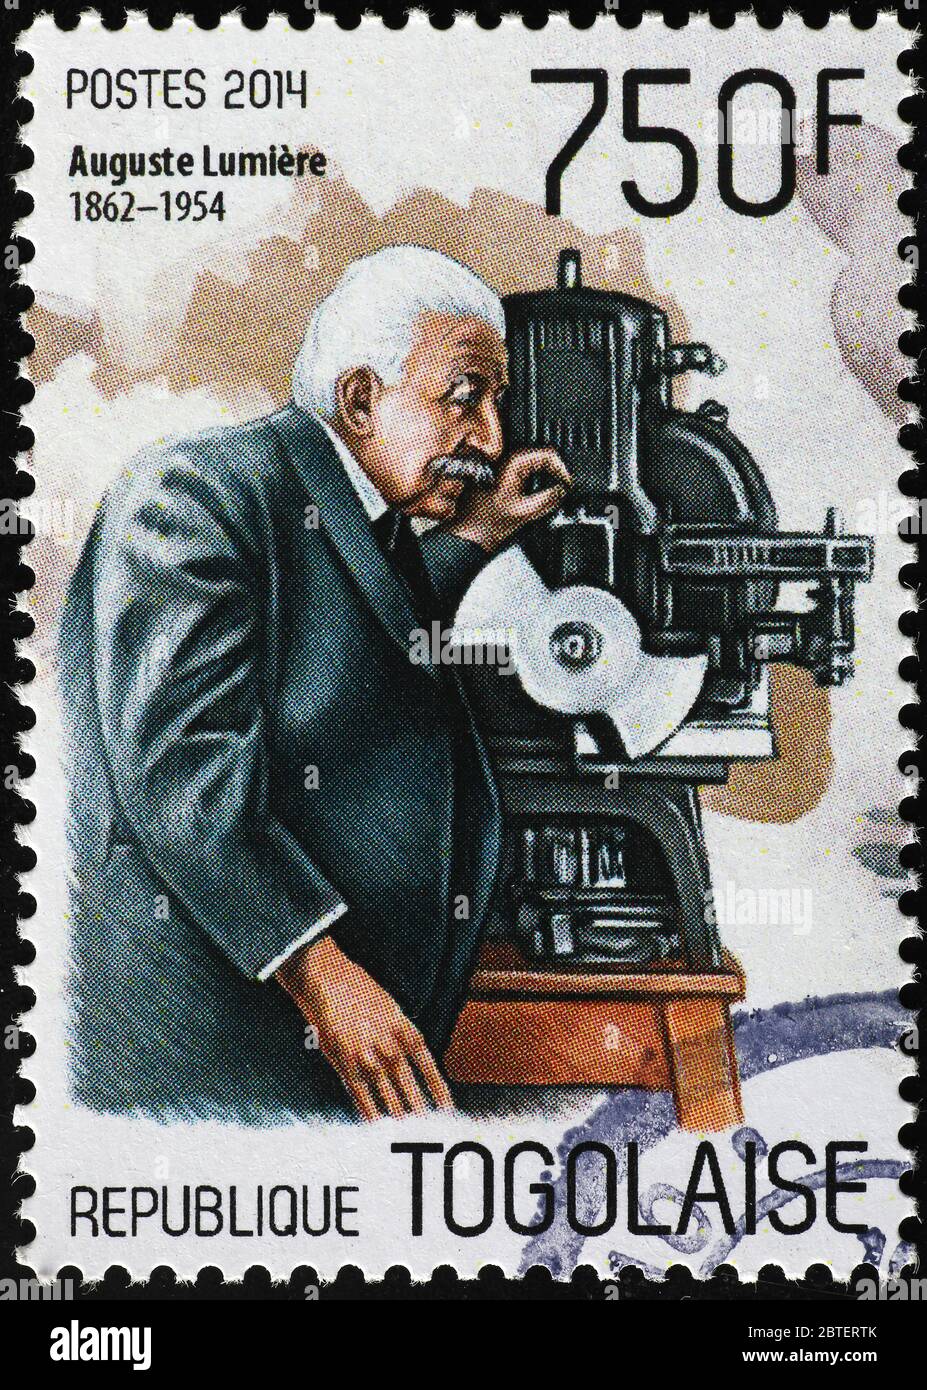 Portrait d'Auguste Lumiere sur timbre-poste Banque D'Images